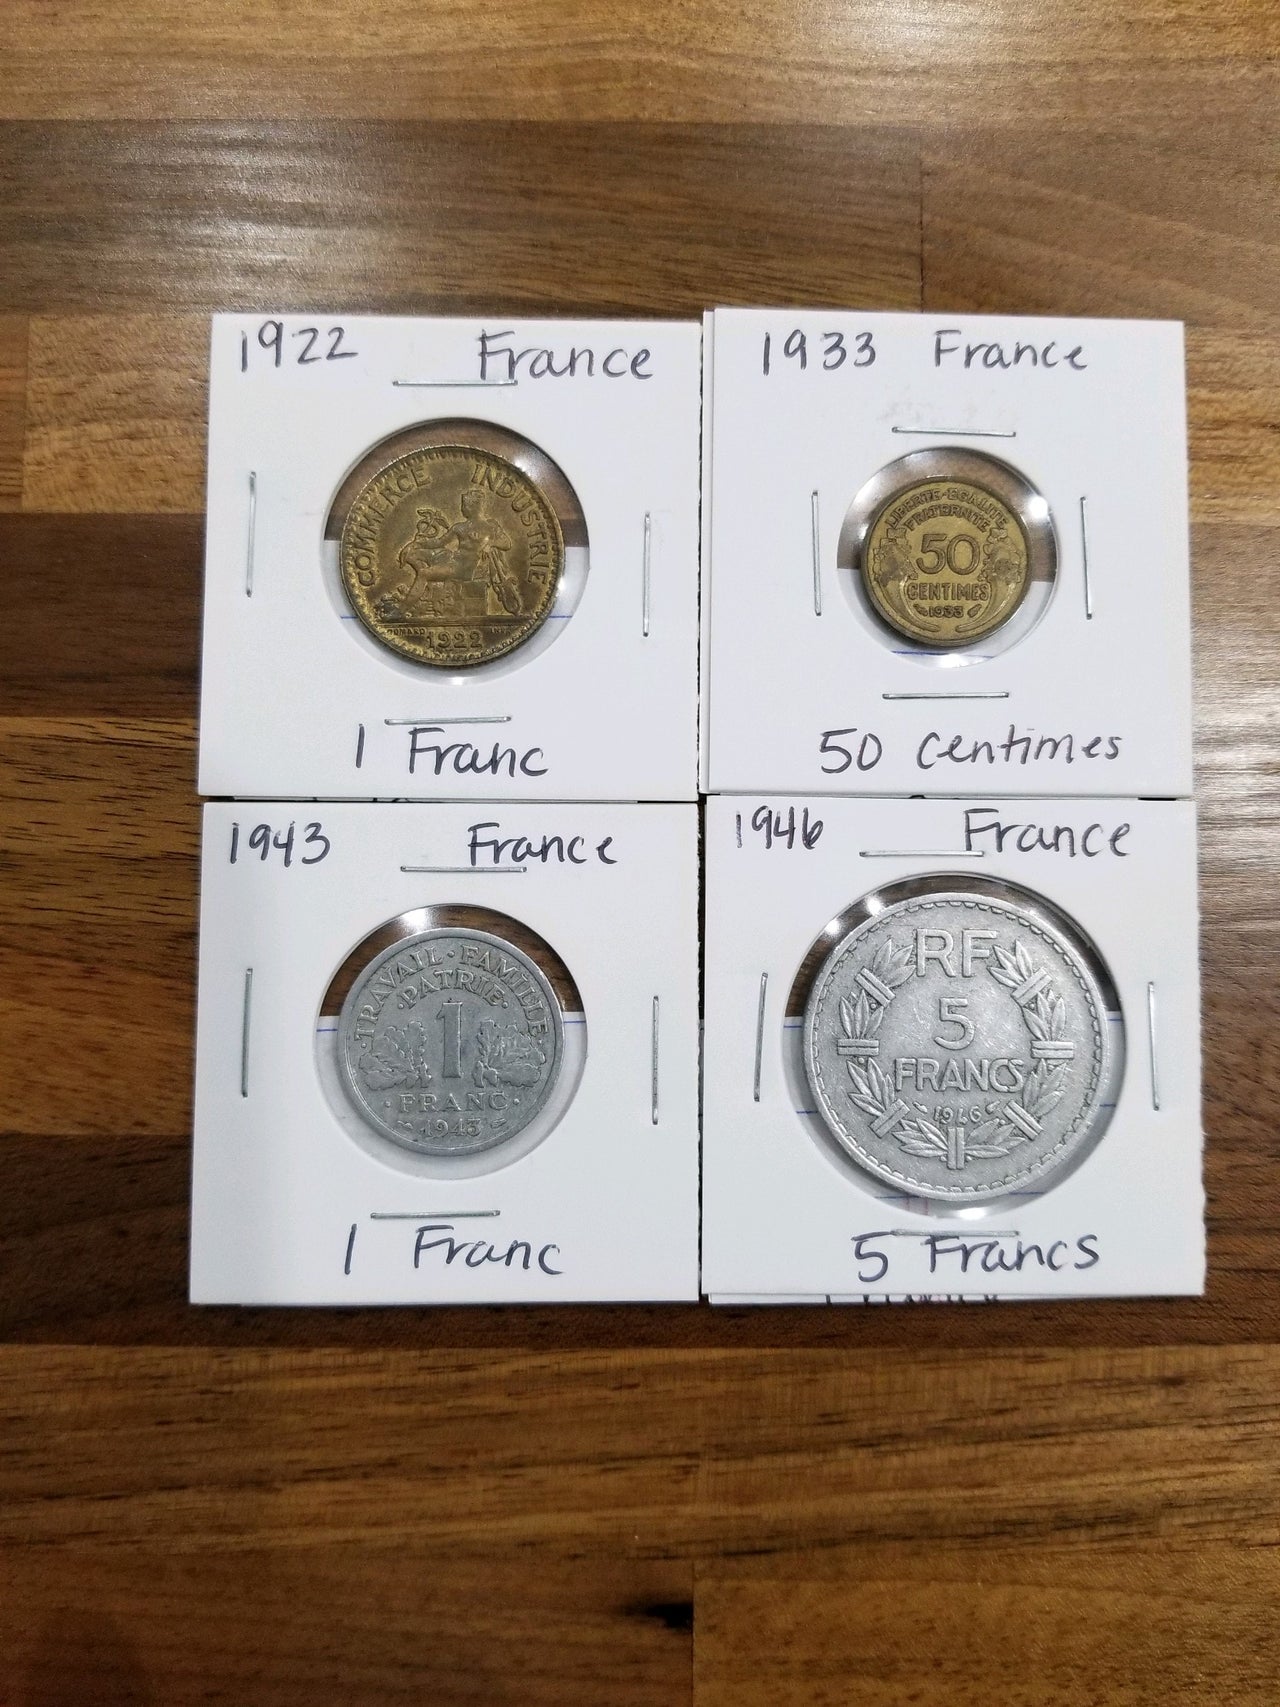 WW2 France coins.jpeg